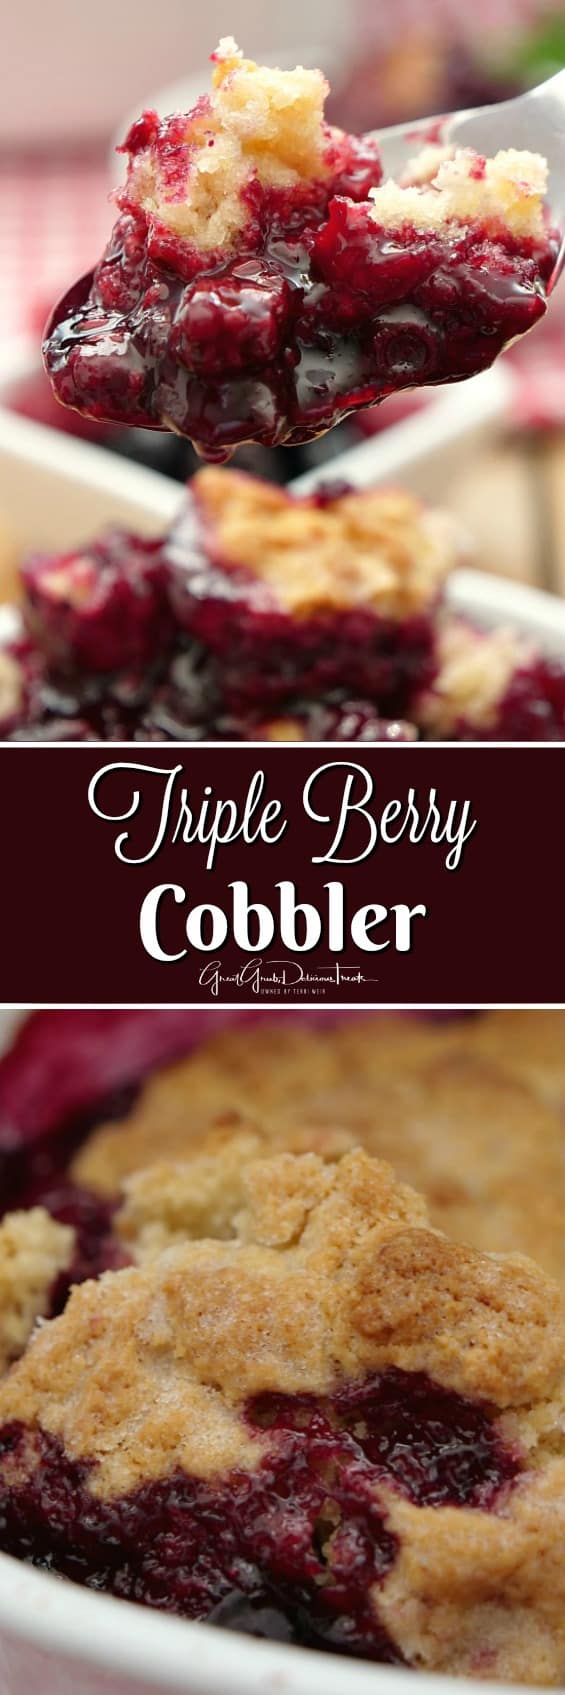 Triple Berry Cobbler